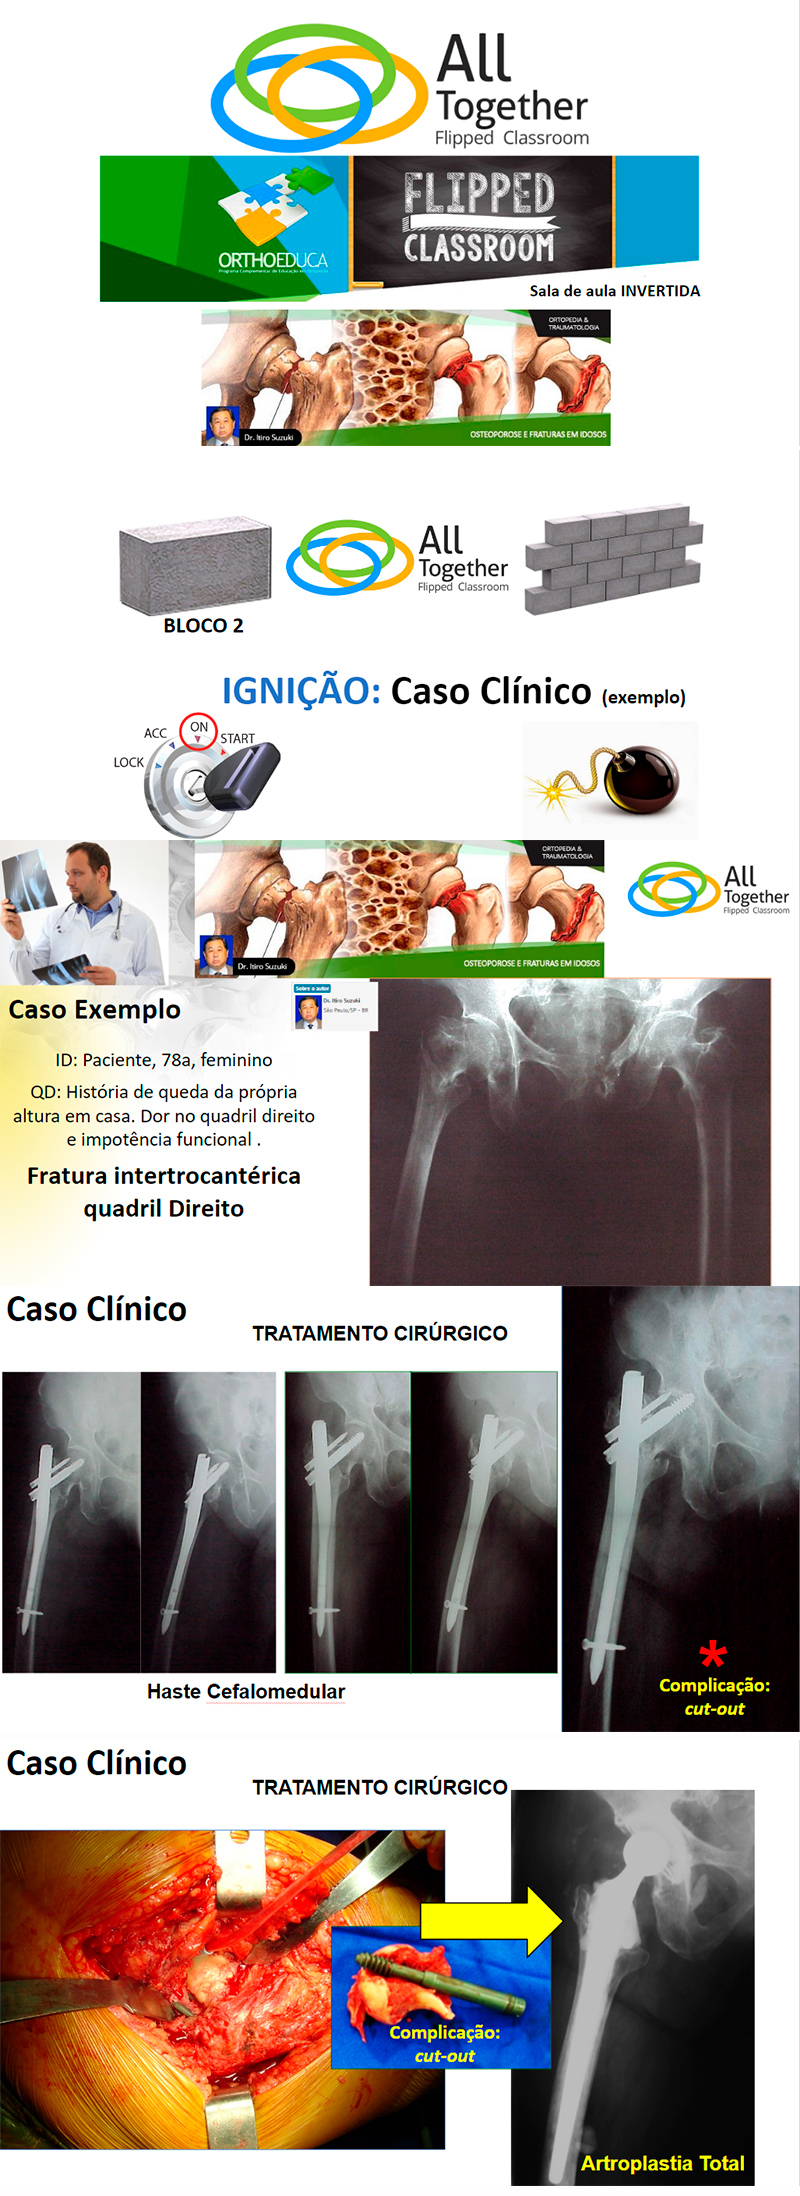 Osteoporose e Fraturas em Idosos - Caso clnico de hoje no All Together s 12h Participe!